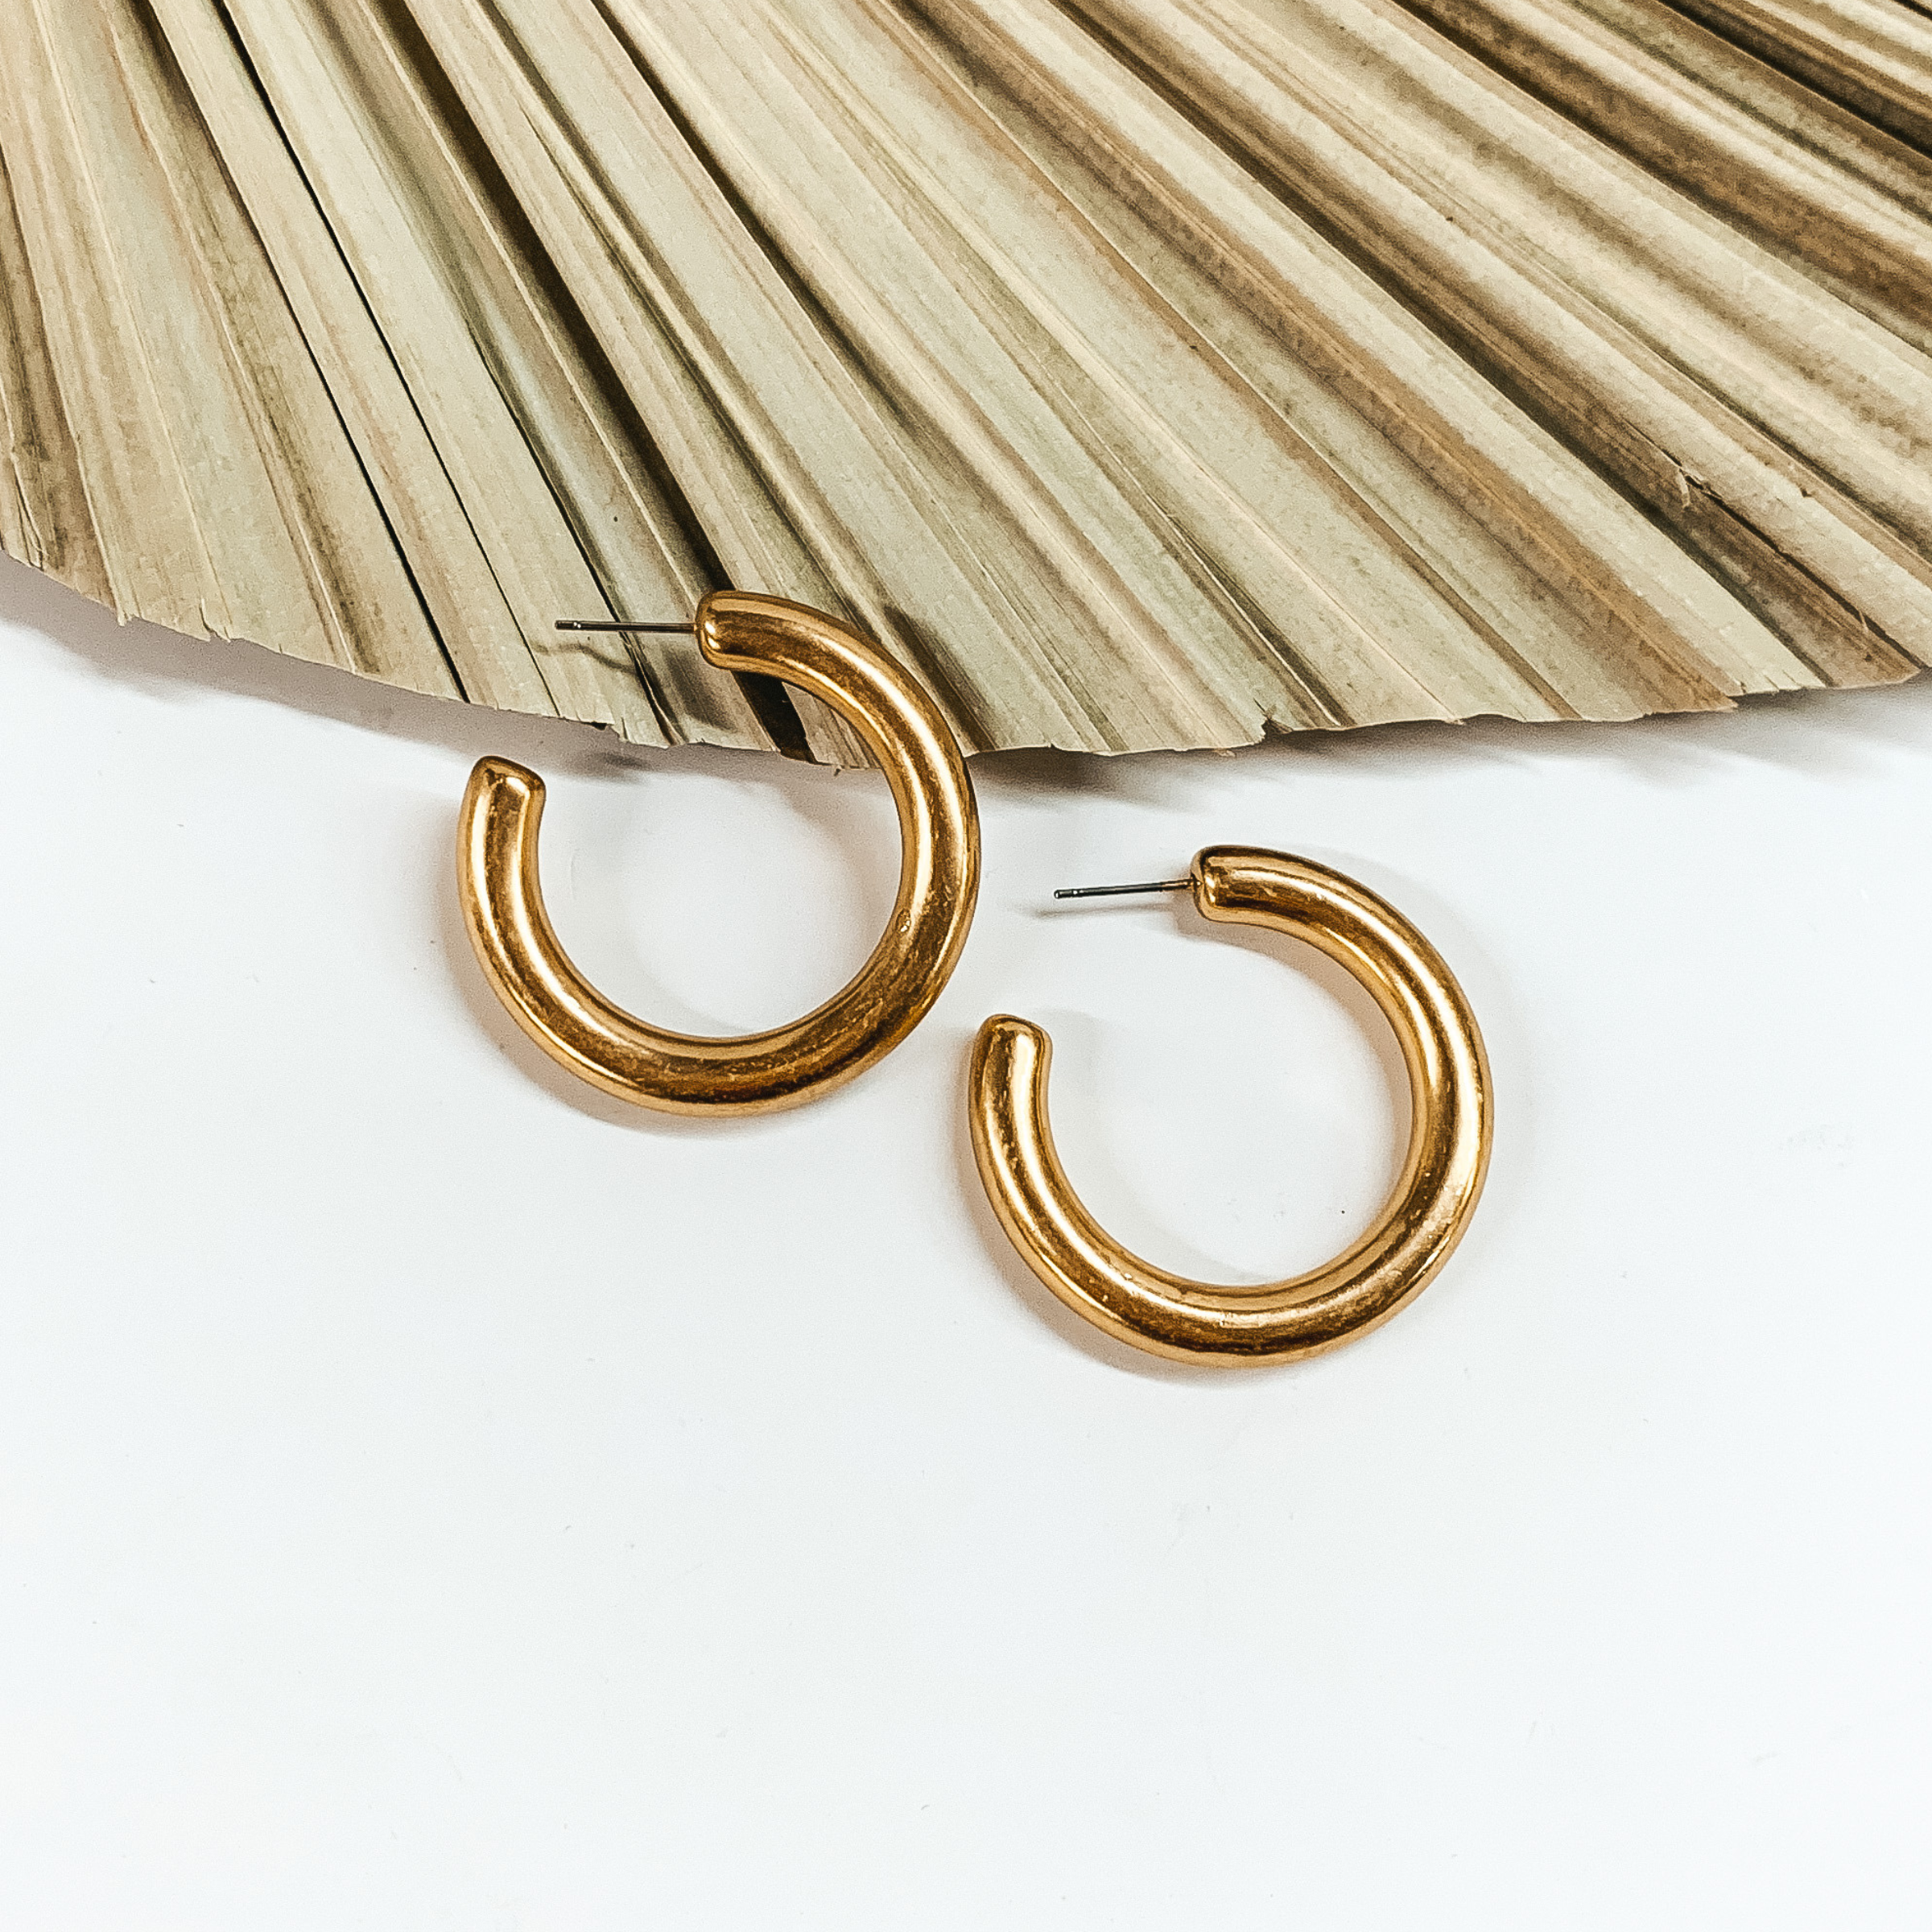 Image of Clean Slate Medium Hoop Earrings in Worn Gold Tone